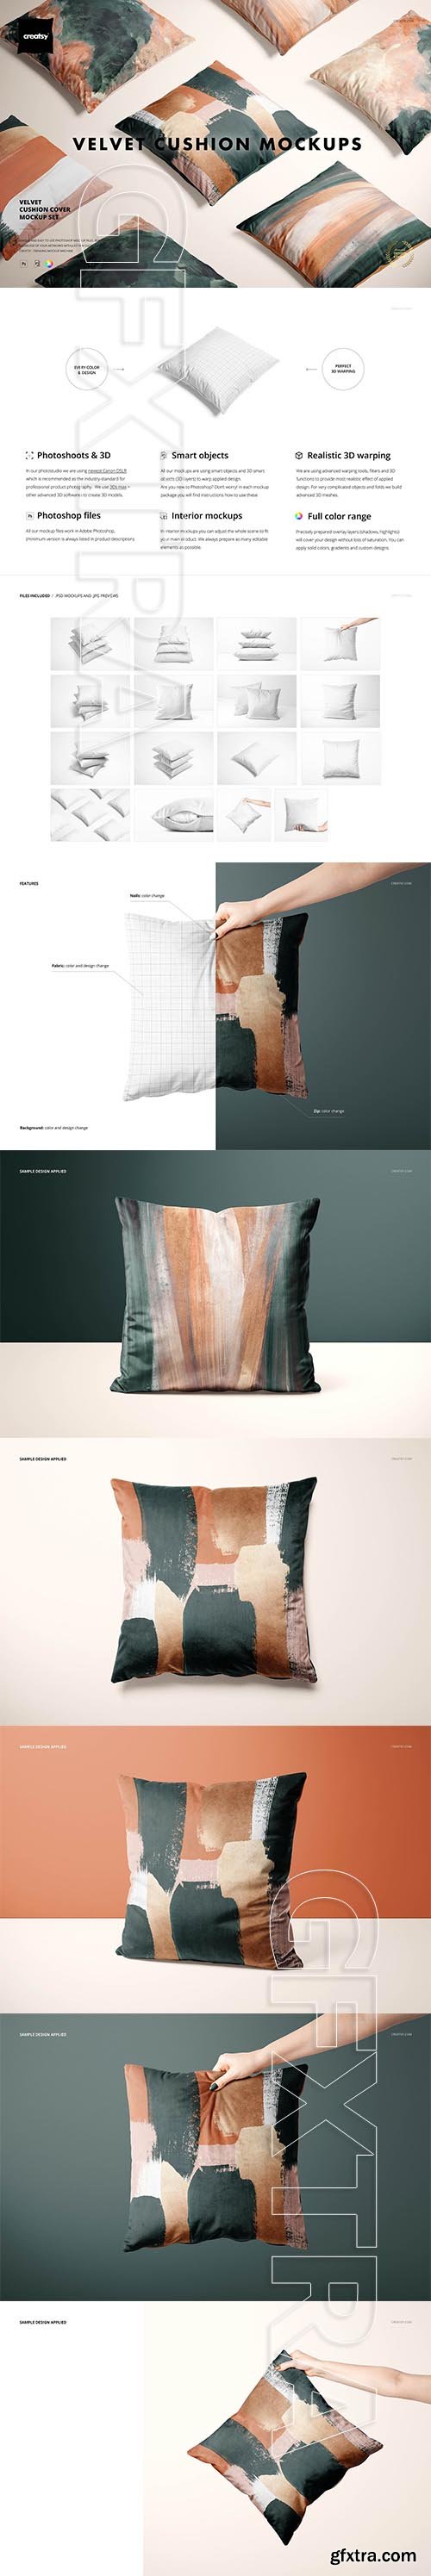 CreativeMarket - Velvet Cushion Cover Mockup Set 5766933